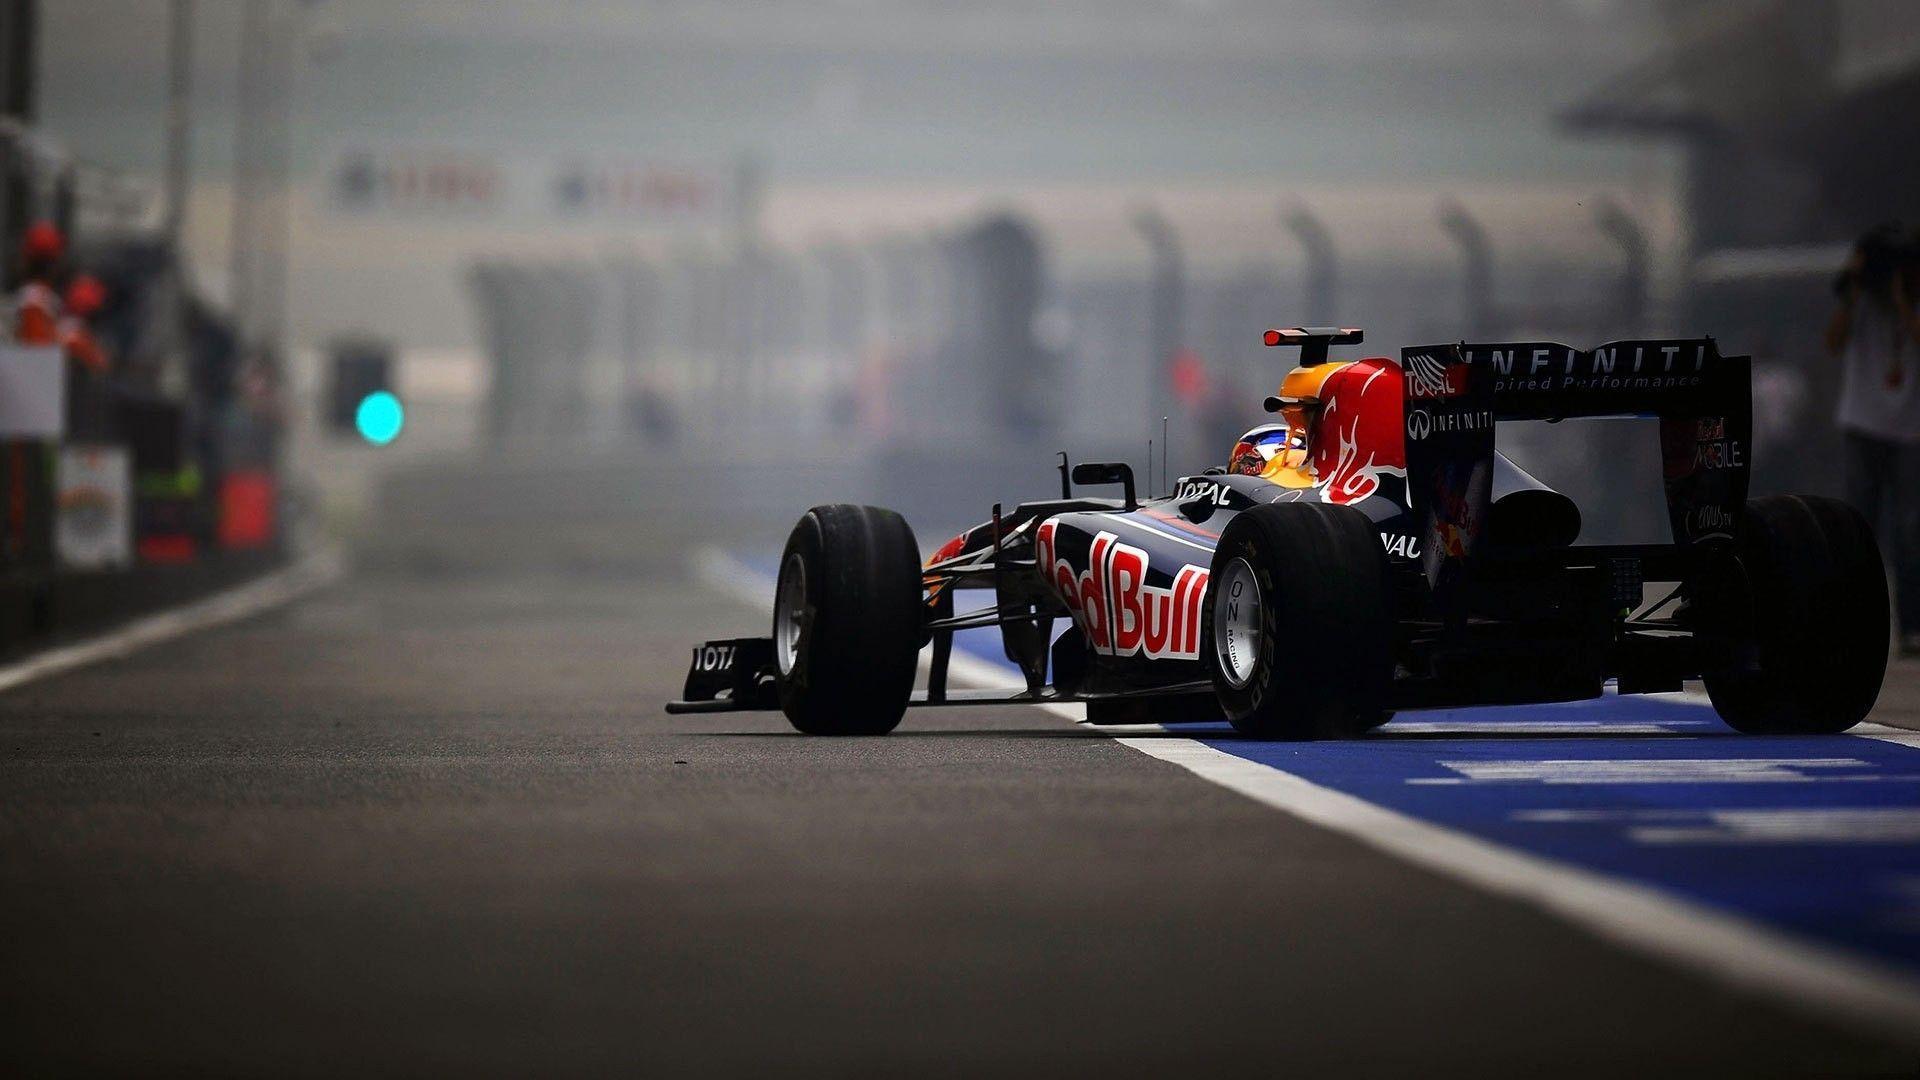 Infiniti Formula 1 Red Bull Racing Wallpaper D Desktop Wide